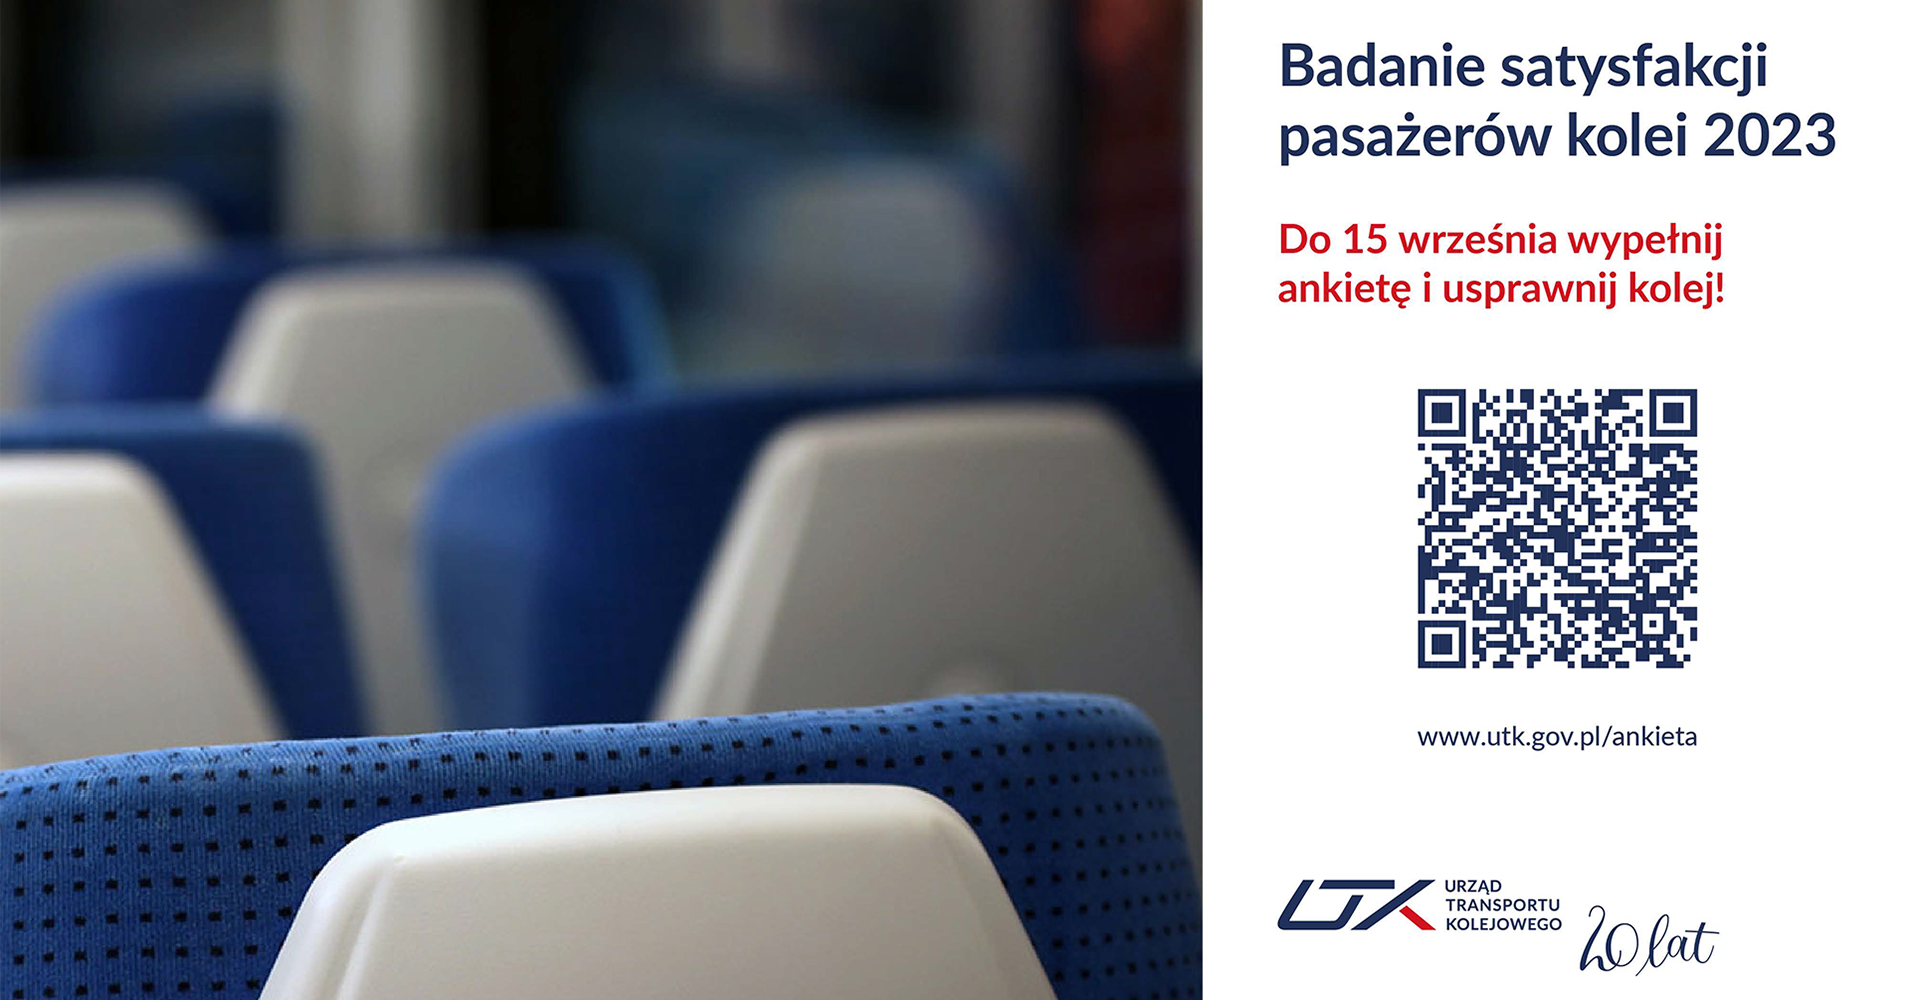 Grafika przedstawiapuste fotele we wnętrzu pociągu, hasło "Badanie Opinii Pasażerów 2023. Do 15 września wyraź opinię i wypełnij ankietę, a także logo UTK. 